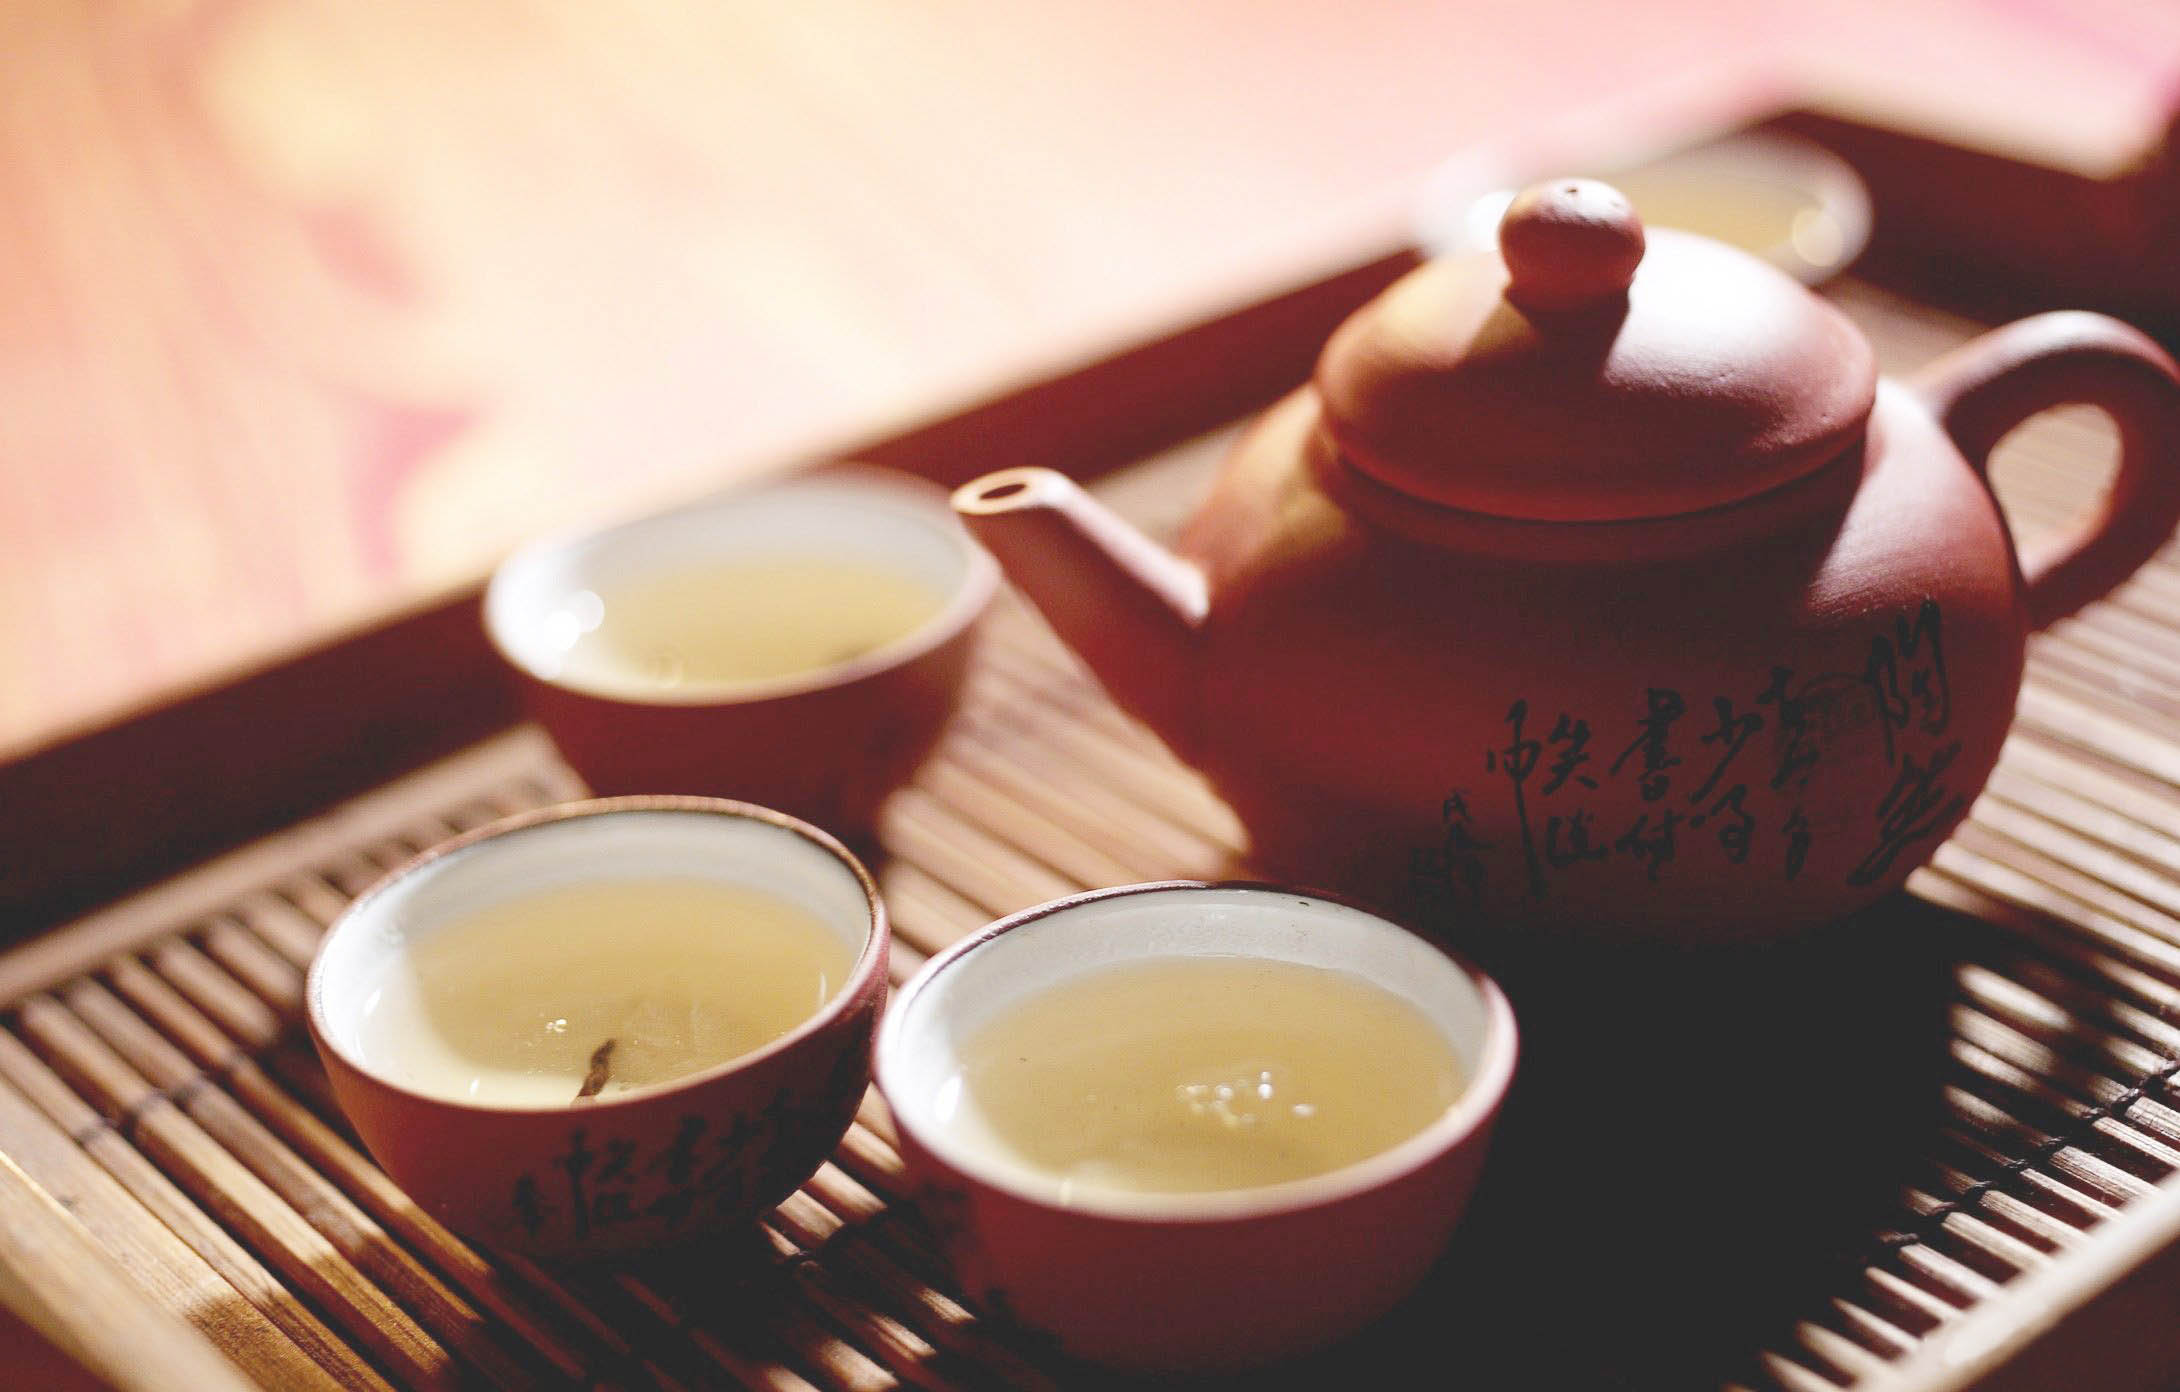 中式茶道文化崇静尚俭展现茶道之美